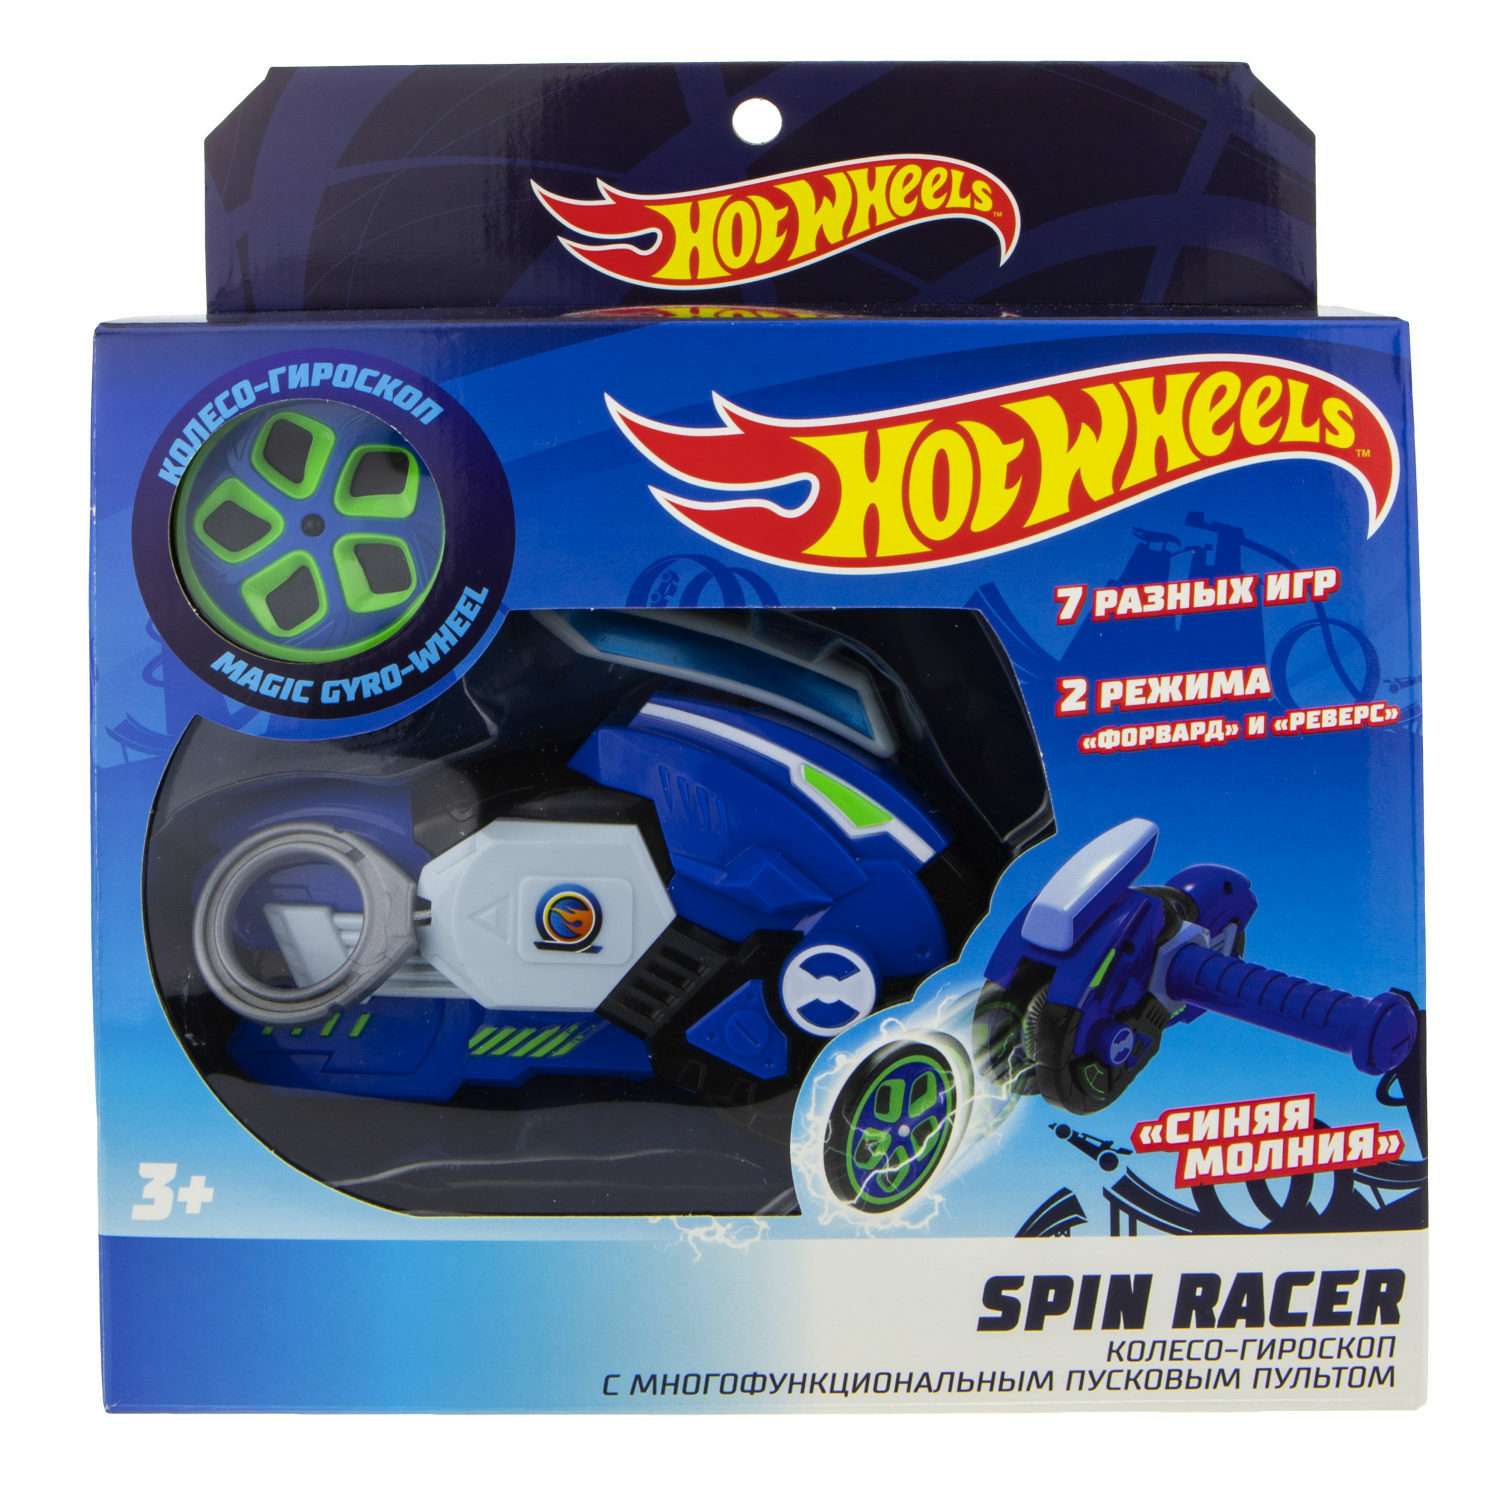 Игровой набор Hot Wheels Spin Racer Синяя Молния игрушечный мотоцикл с колесом-гироскопом Т19373 - фото 8